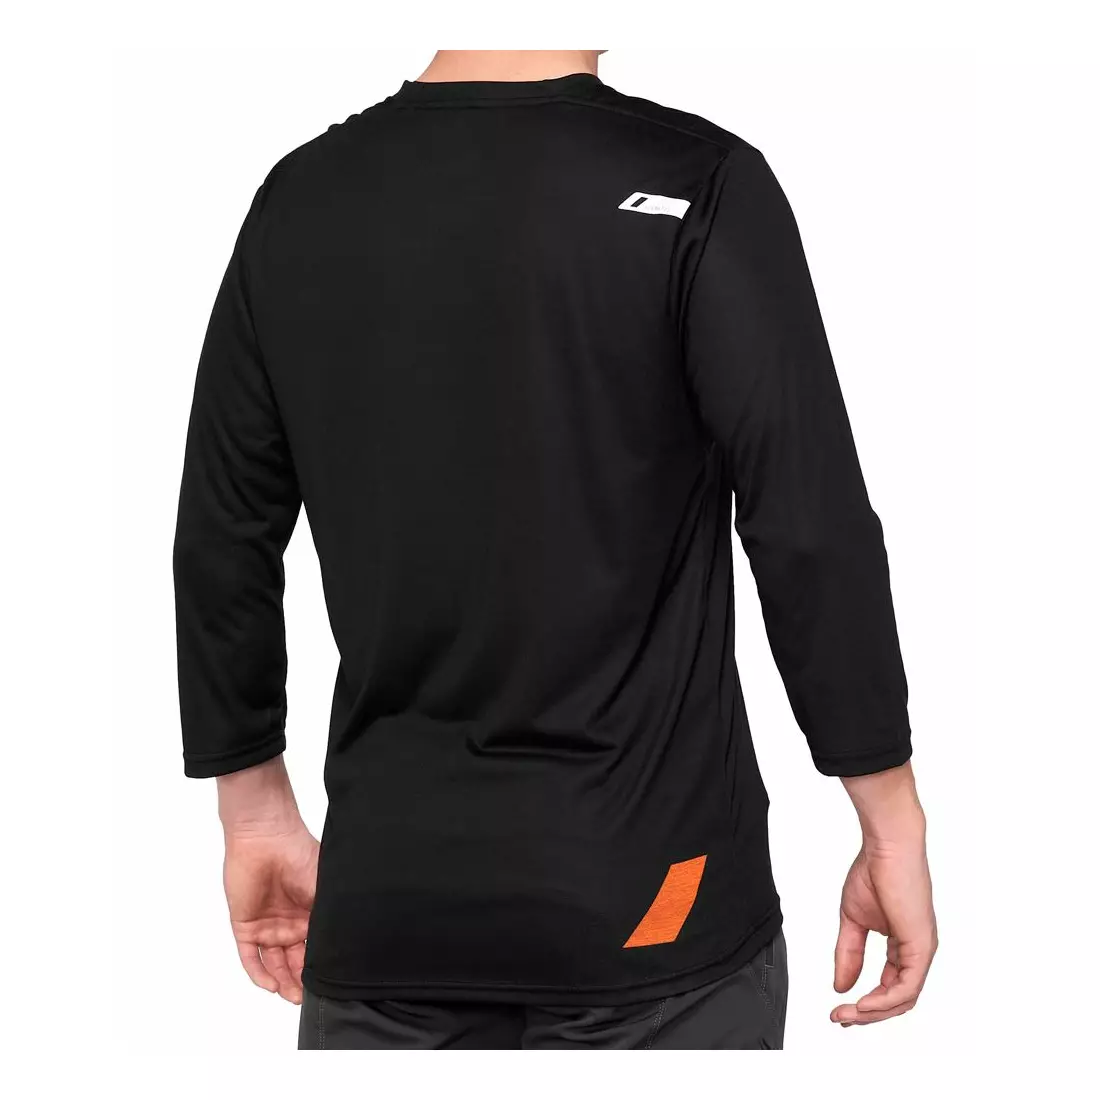 100% pánske tričko s rukávom 3/4 airmatic black orange STO-41313-260-10